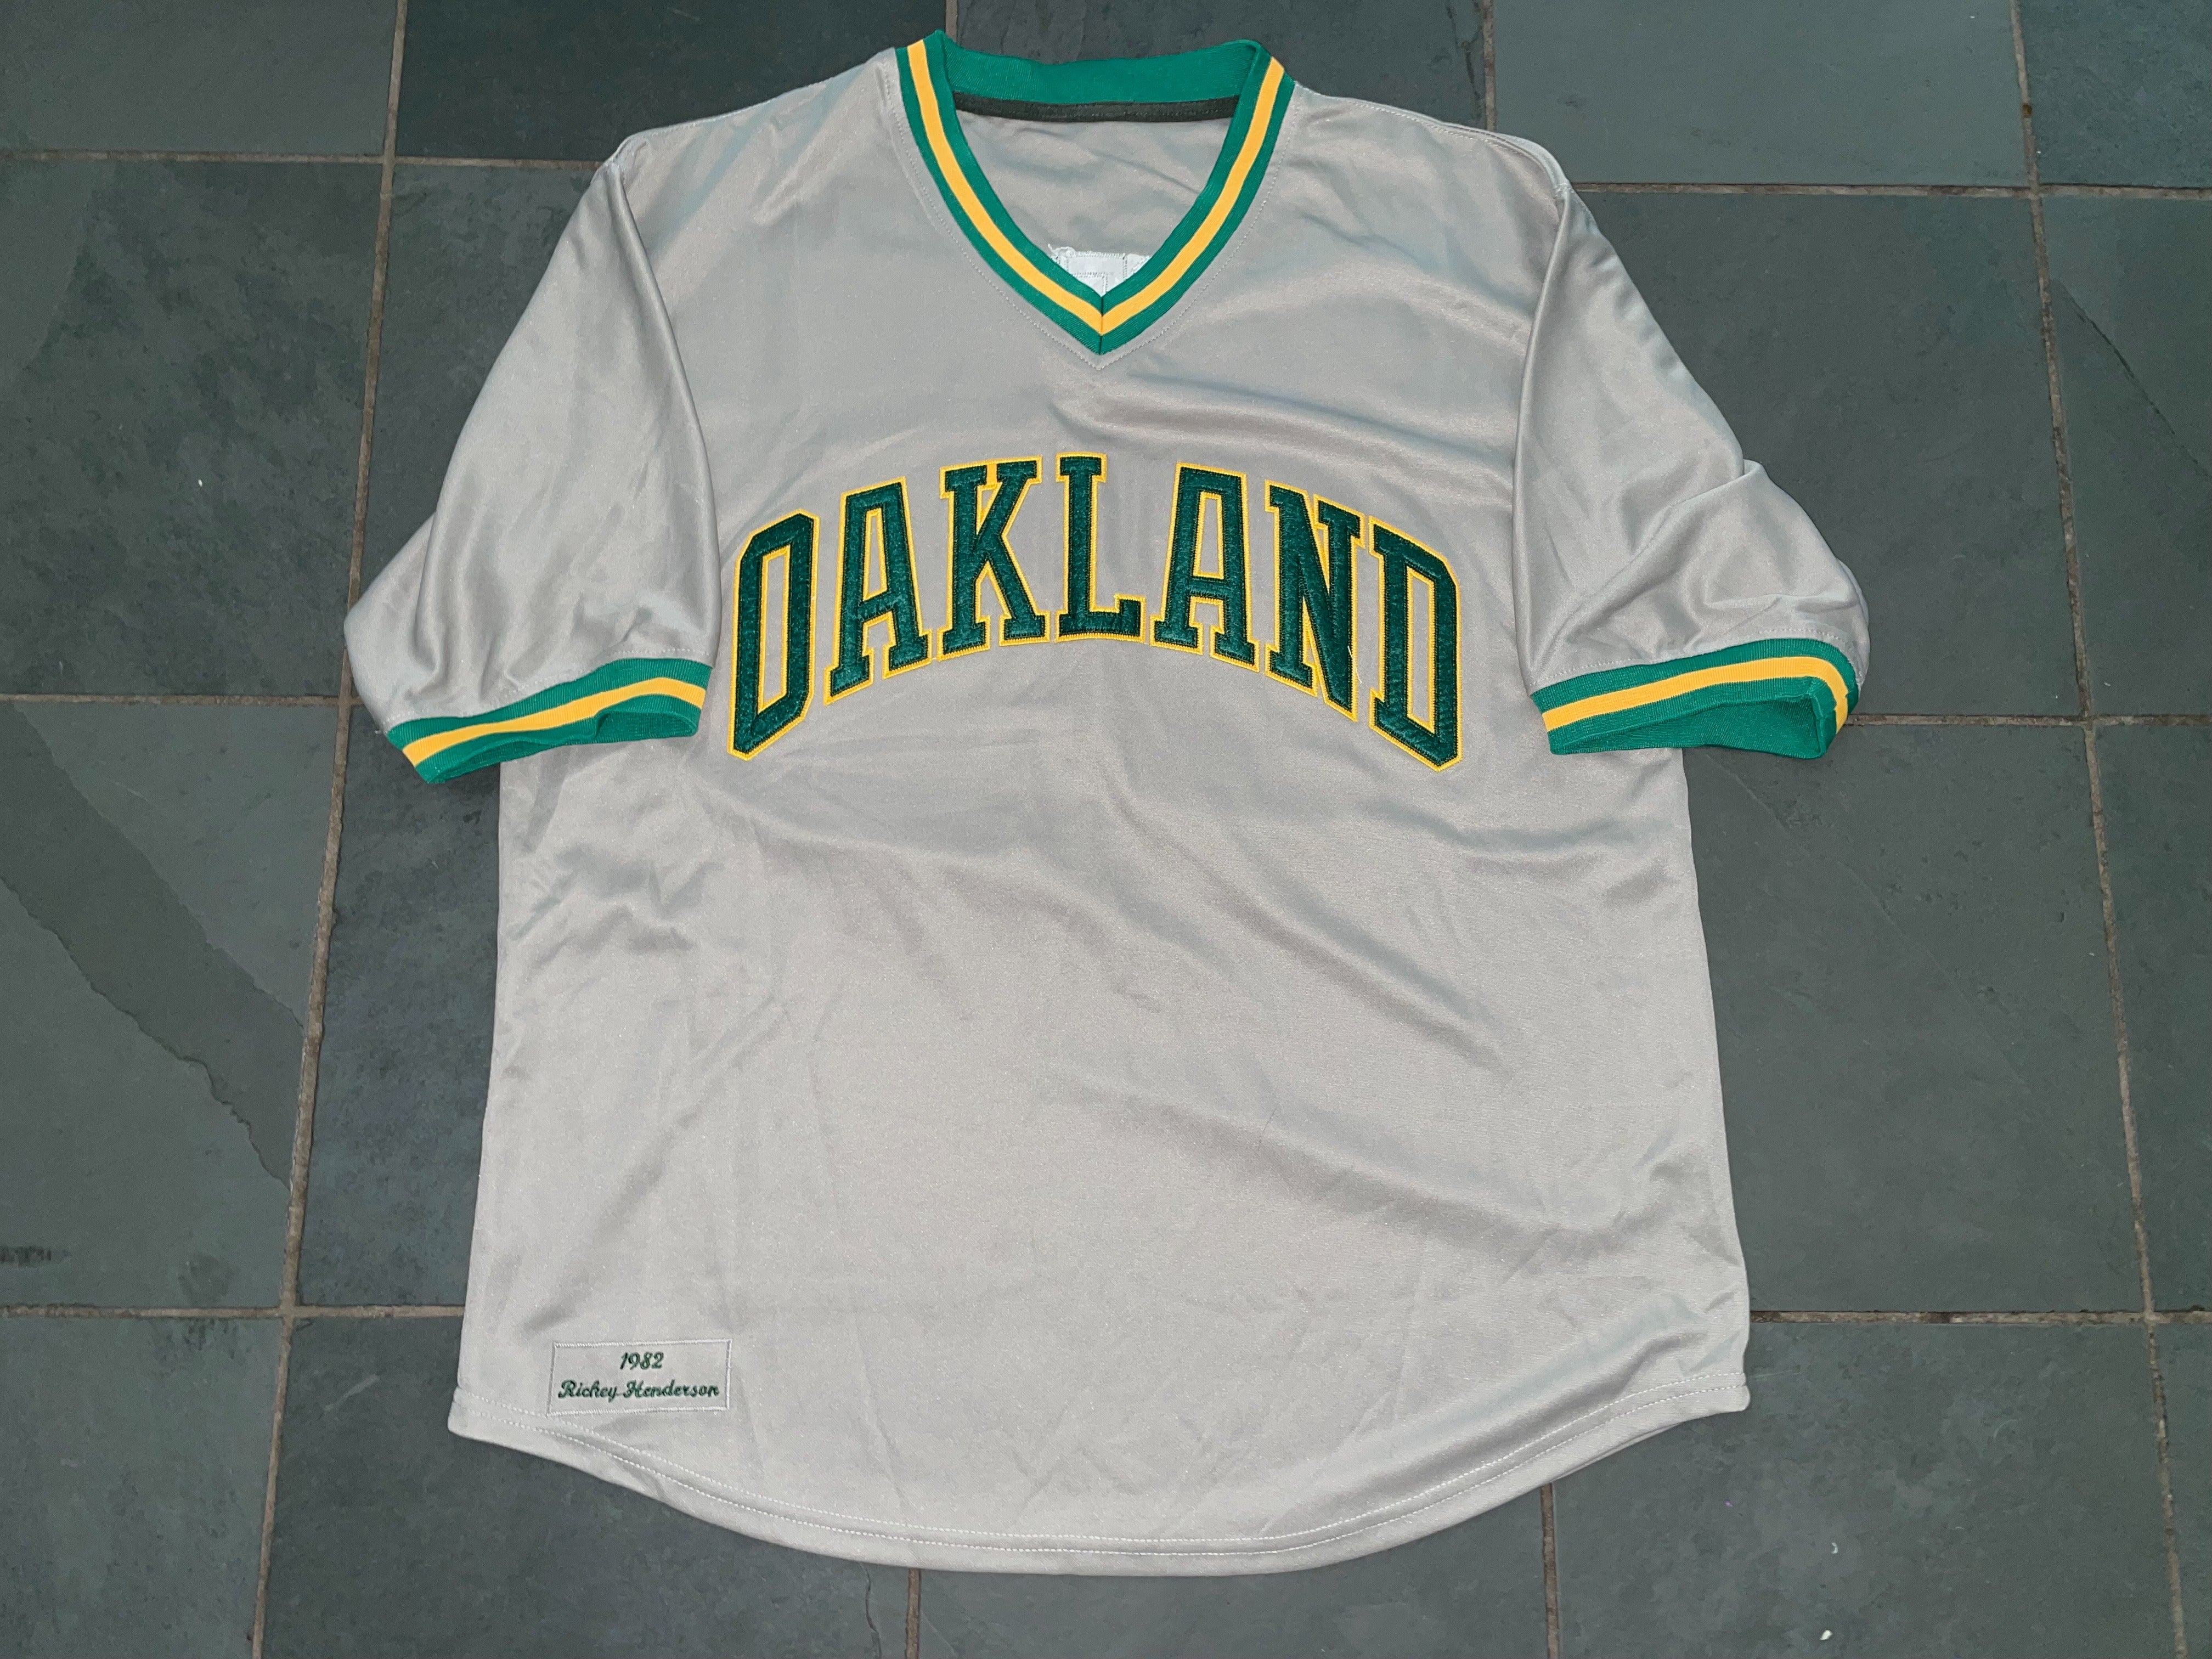 MLB Oakland Athletics Men's Replica Baseball Jersey.